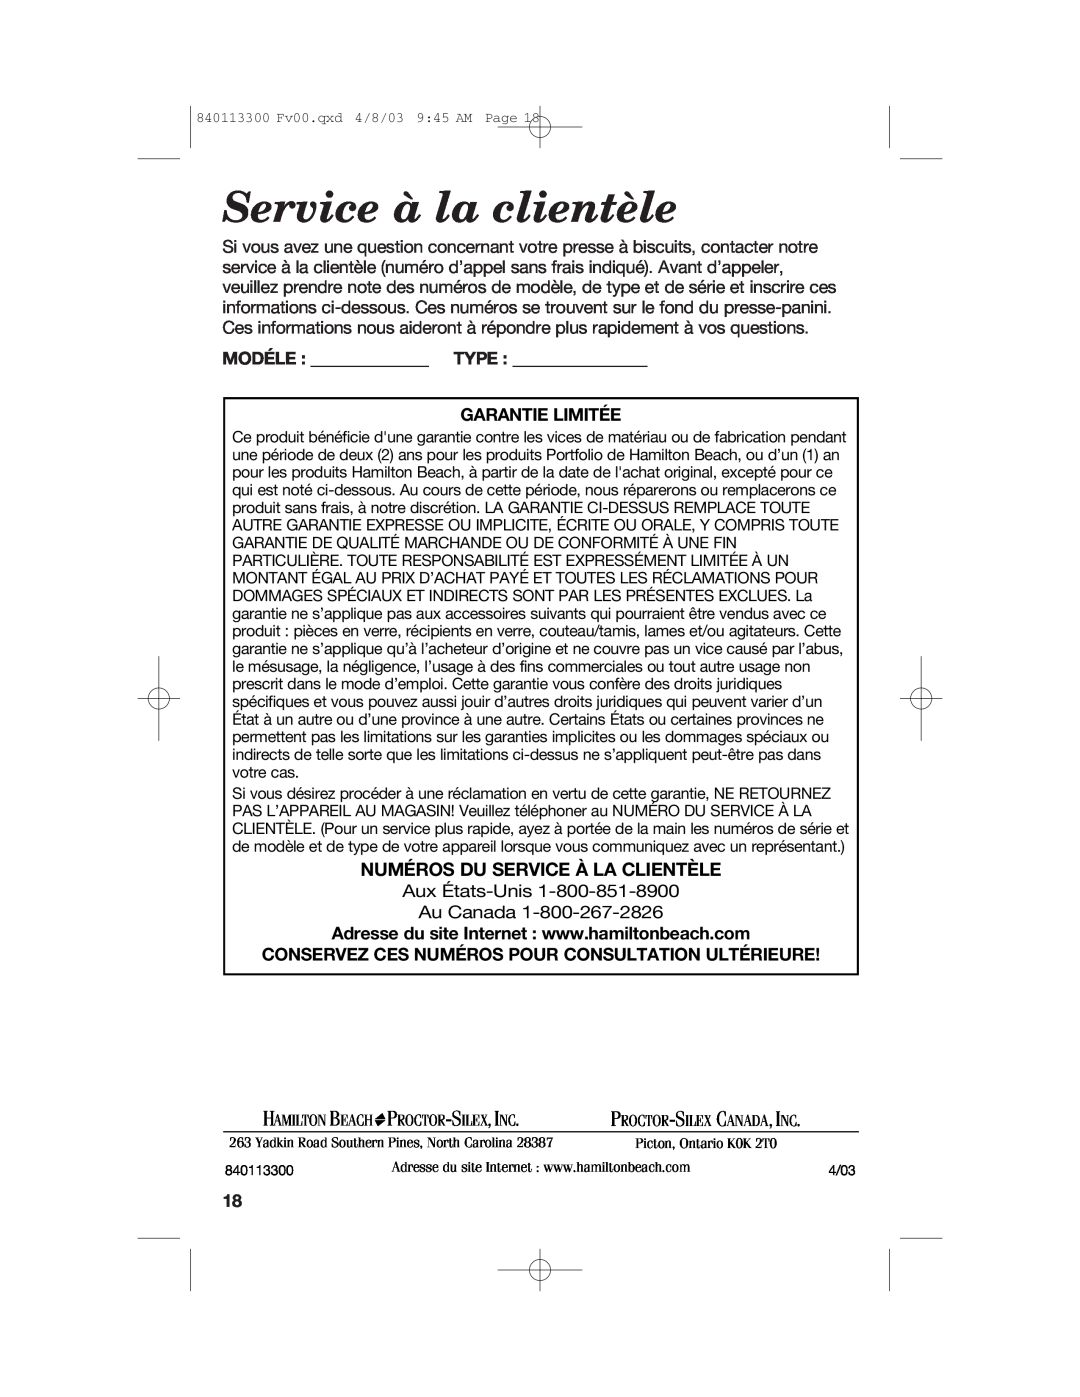 Hamilton Beach 840113300 Service à la clientèle, Numéros Du Service À La Clientèle, Modéle Type Garantie Limitée 